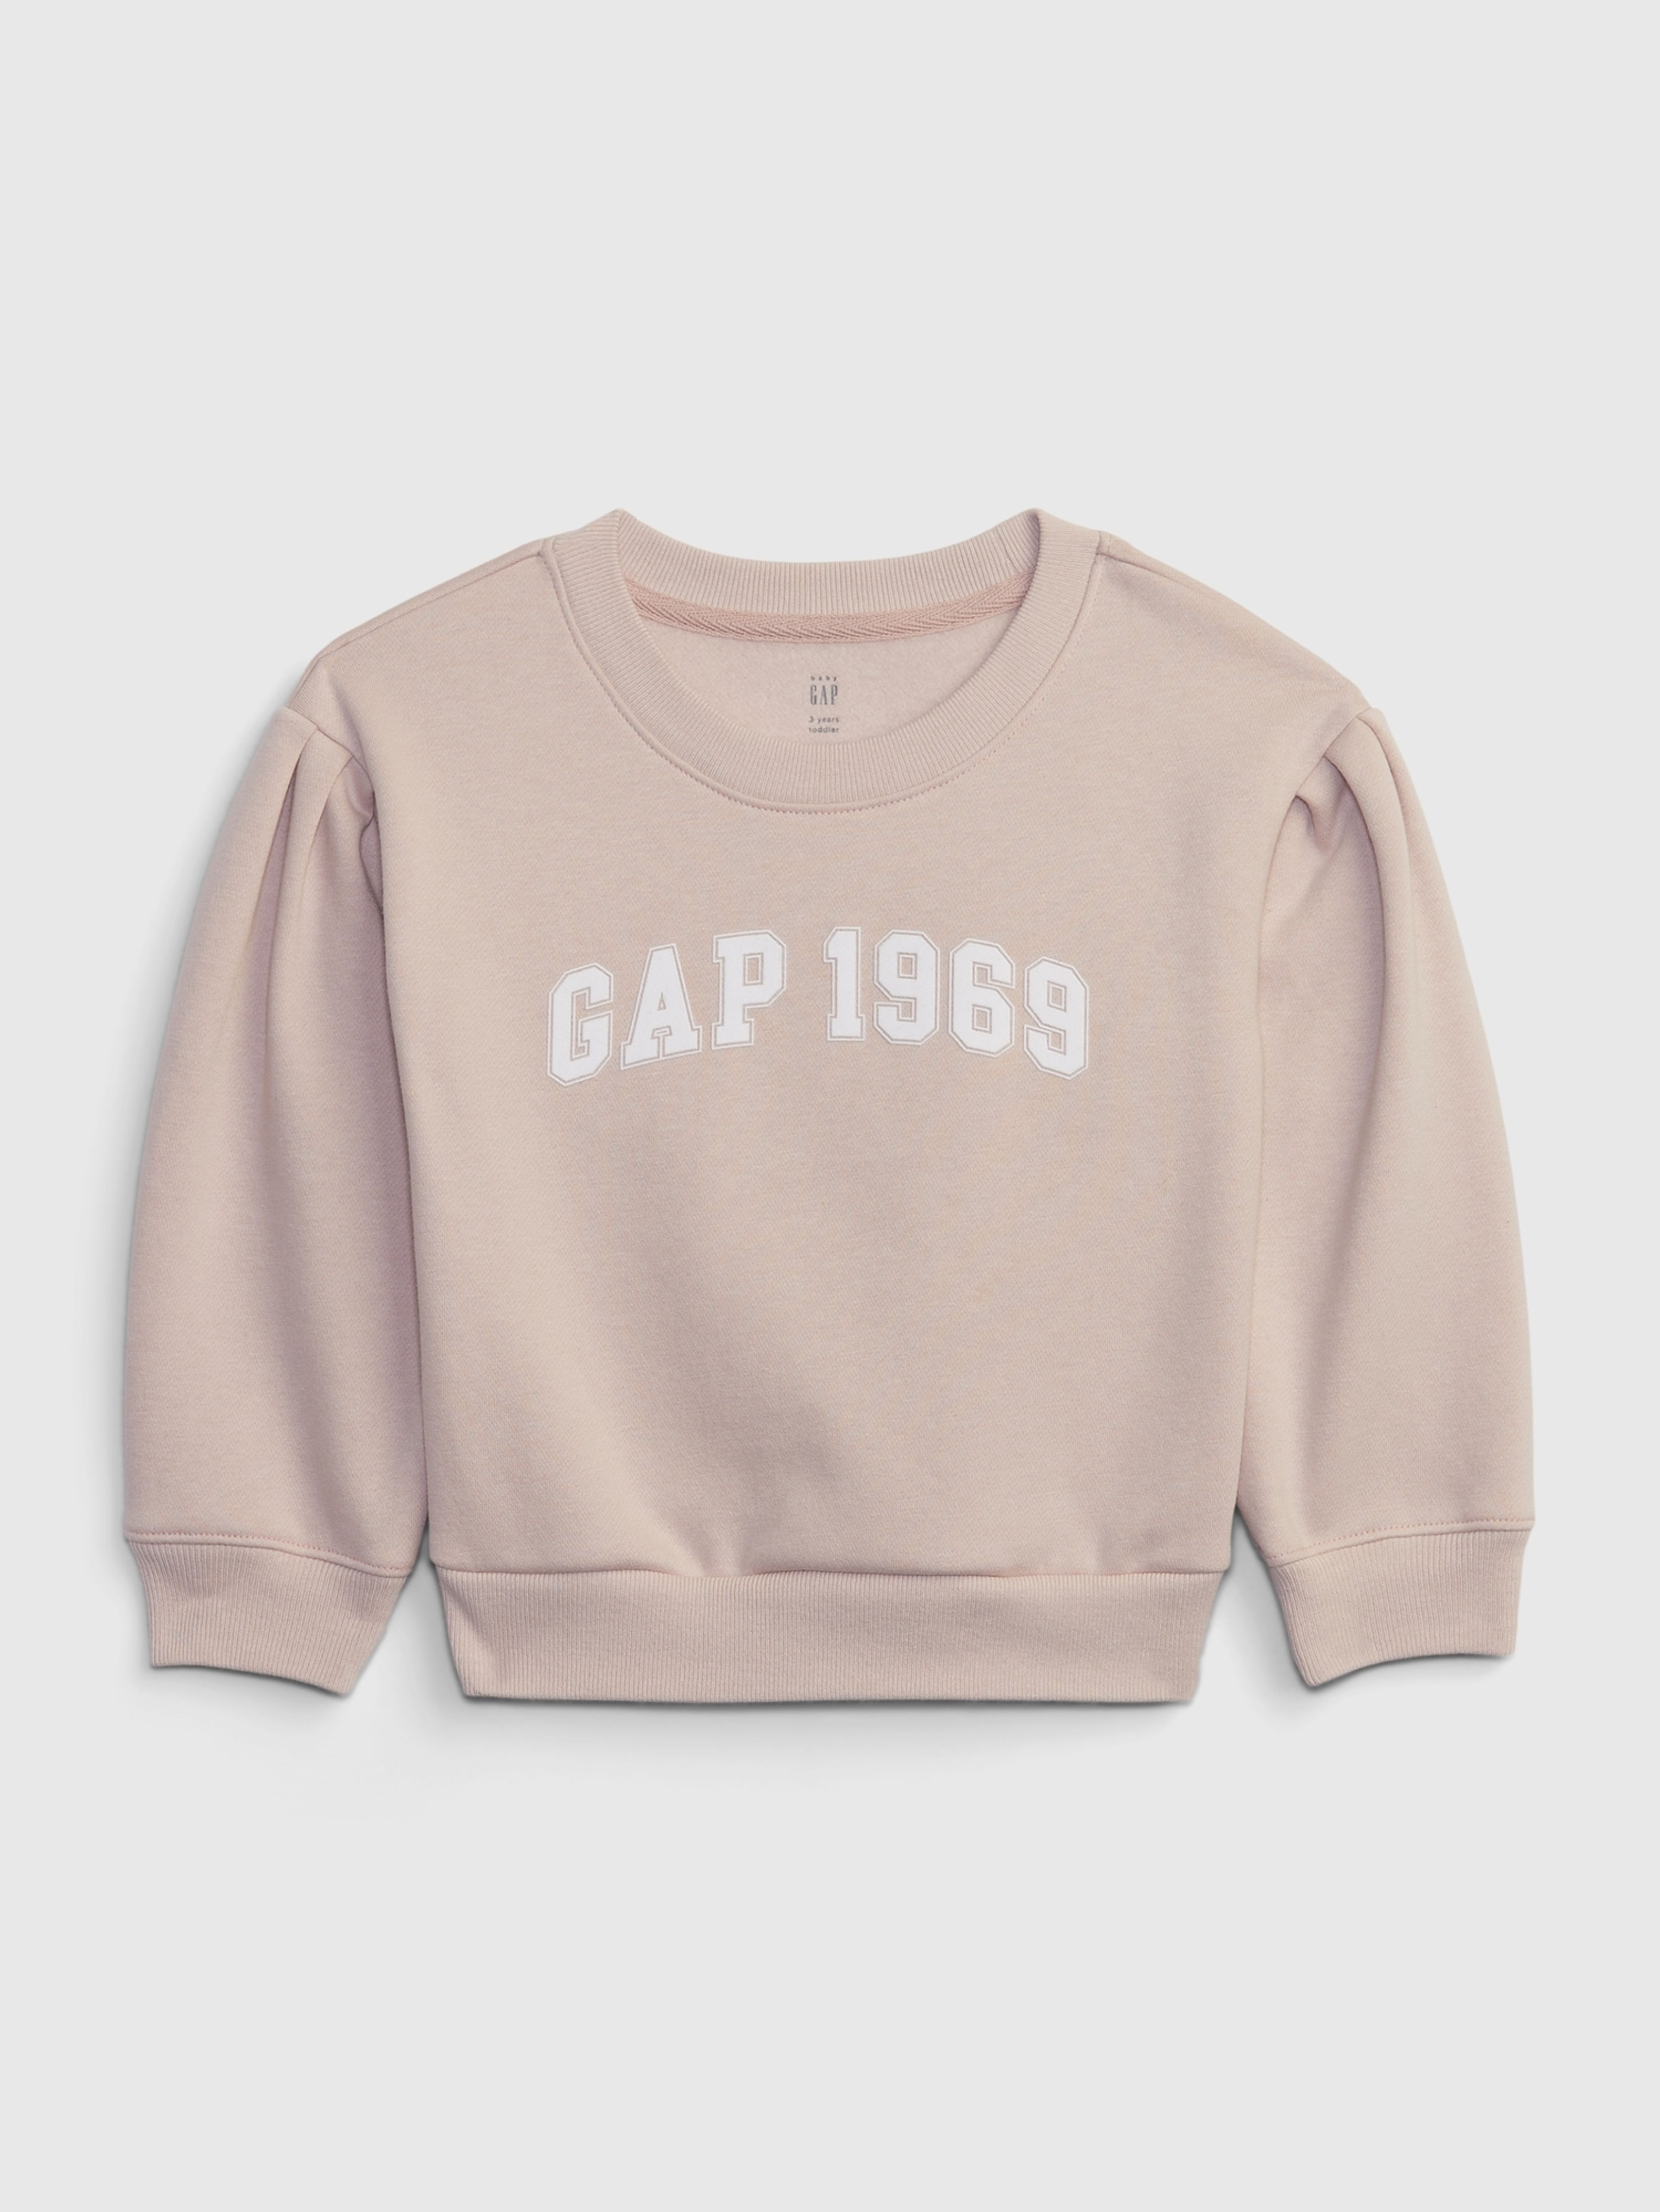 Dziecięca bluza GAP 1969